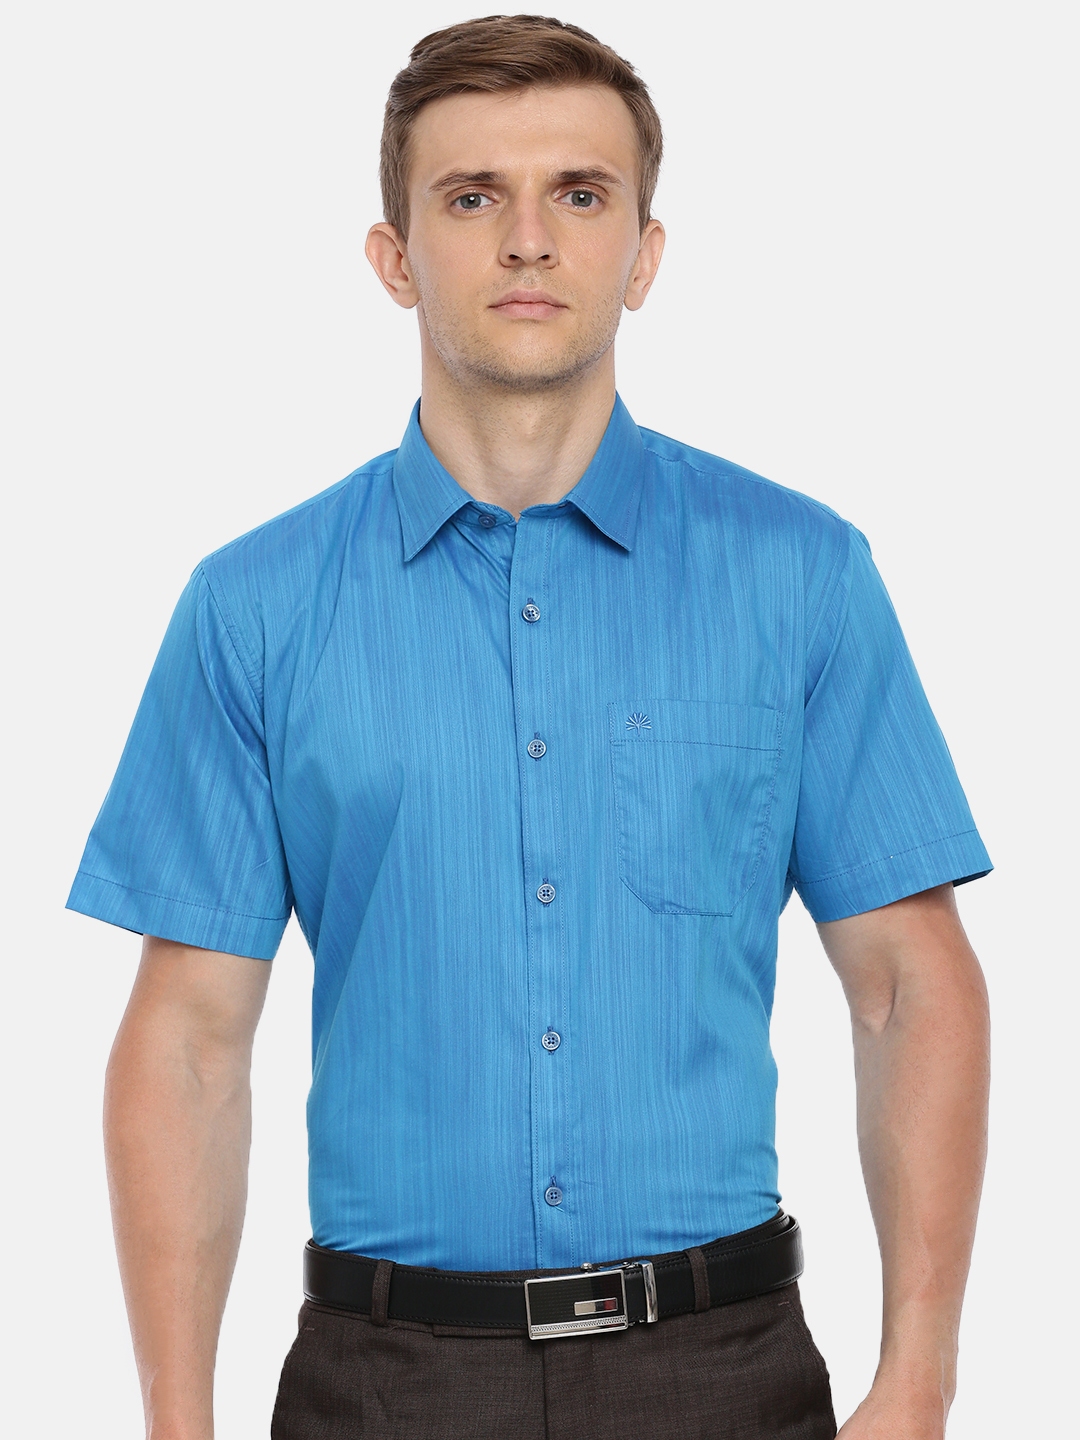 Buy Chennis Men Blue Slim Fit Solid Formal Shirt - Shirts for Men ...